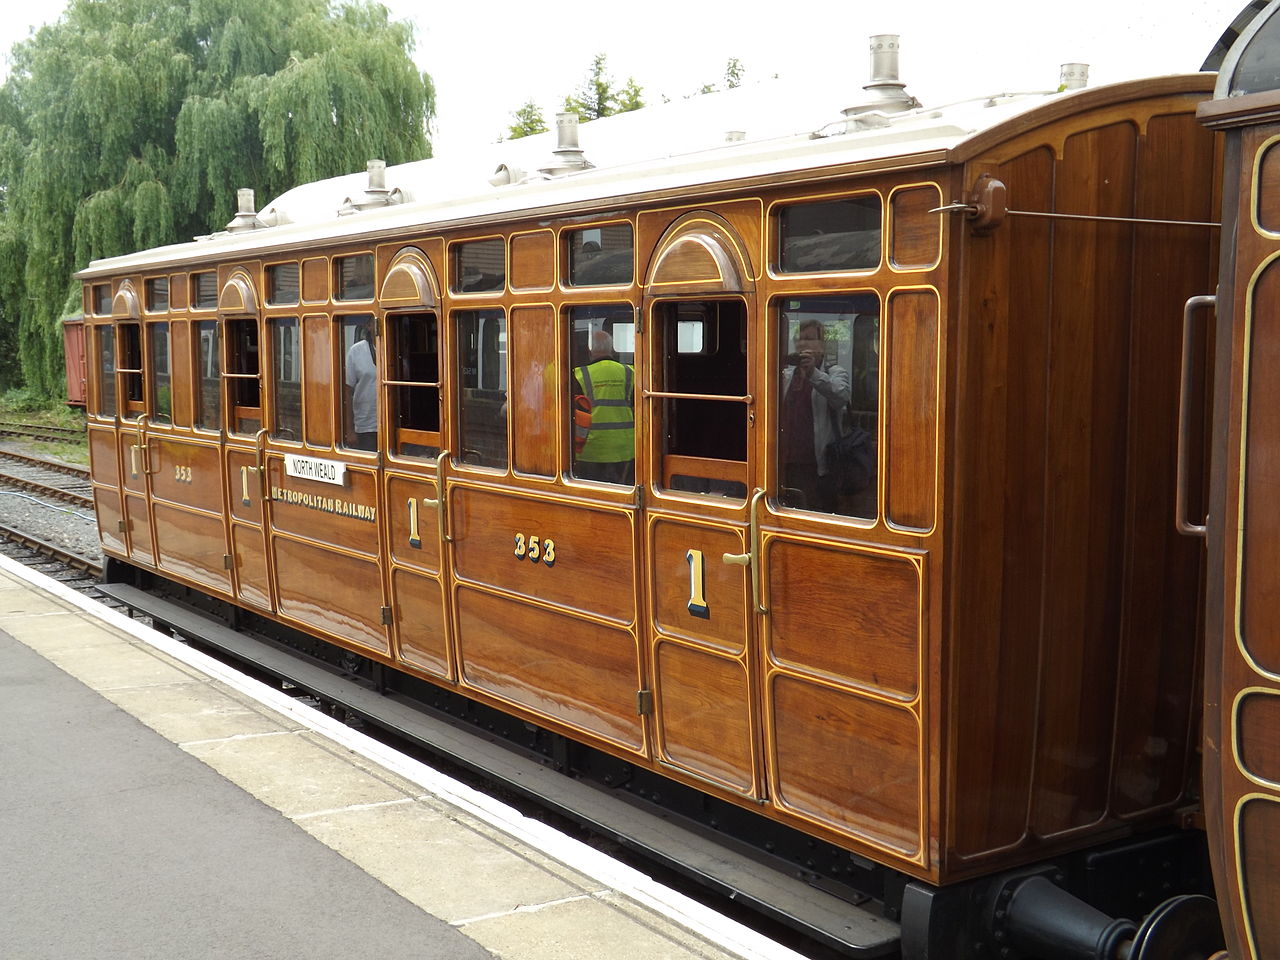 File:Metropolitan Railway Jubilee carriage No. 353.JPG 